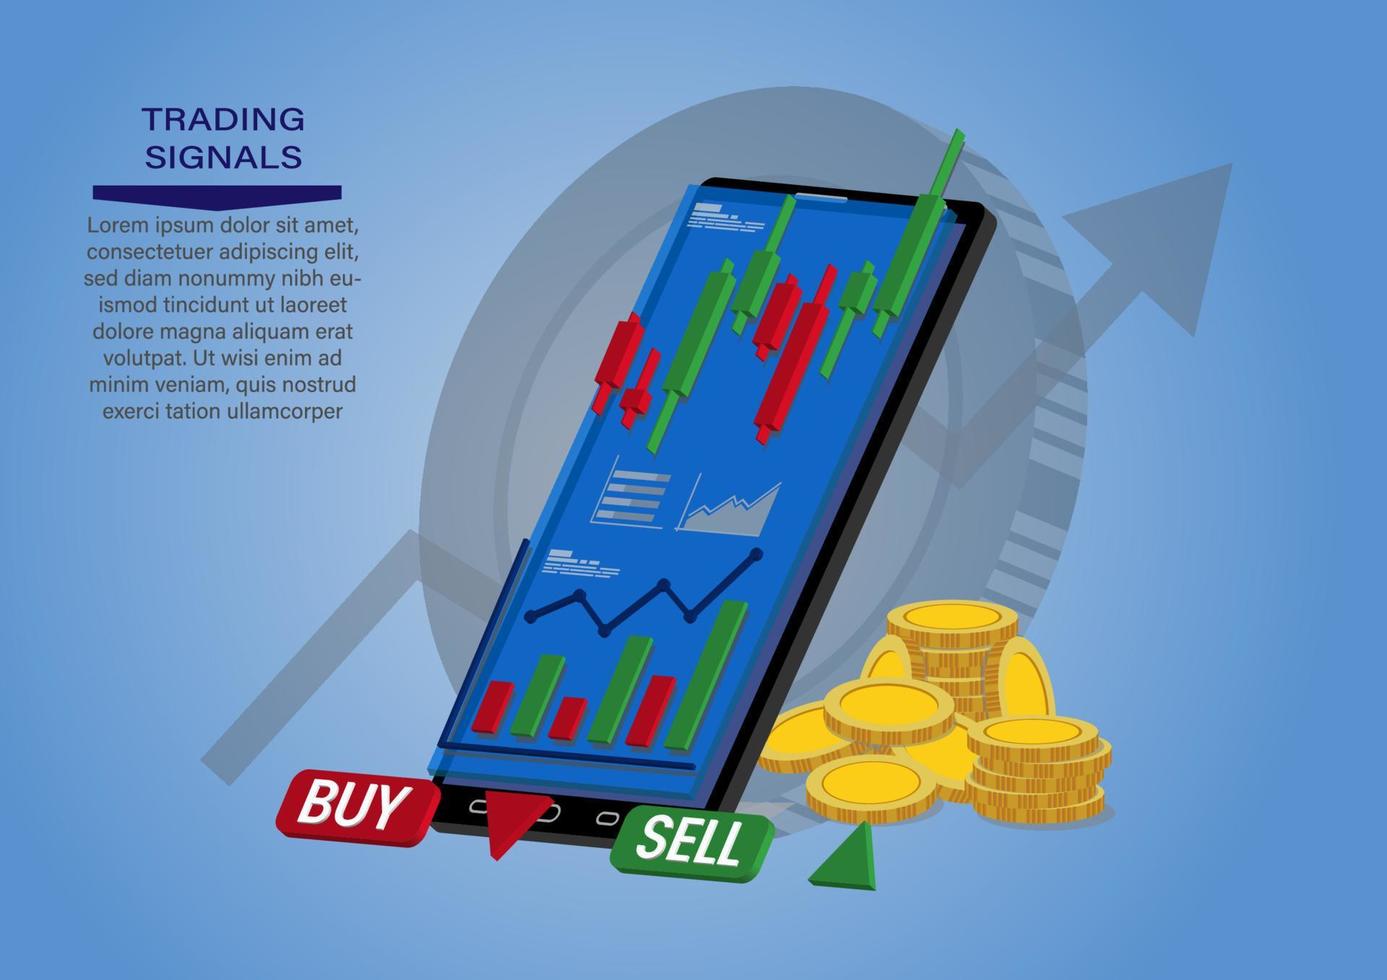 gráfico de velas de venta y compra de acciones mediante teléfonos móviles, comercio de inversión en el mercado, ilustración vectorial vector